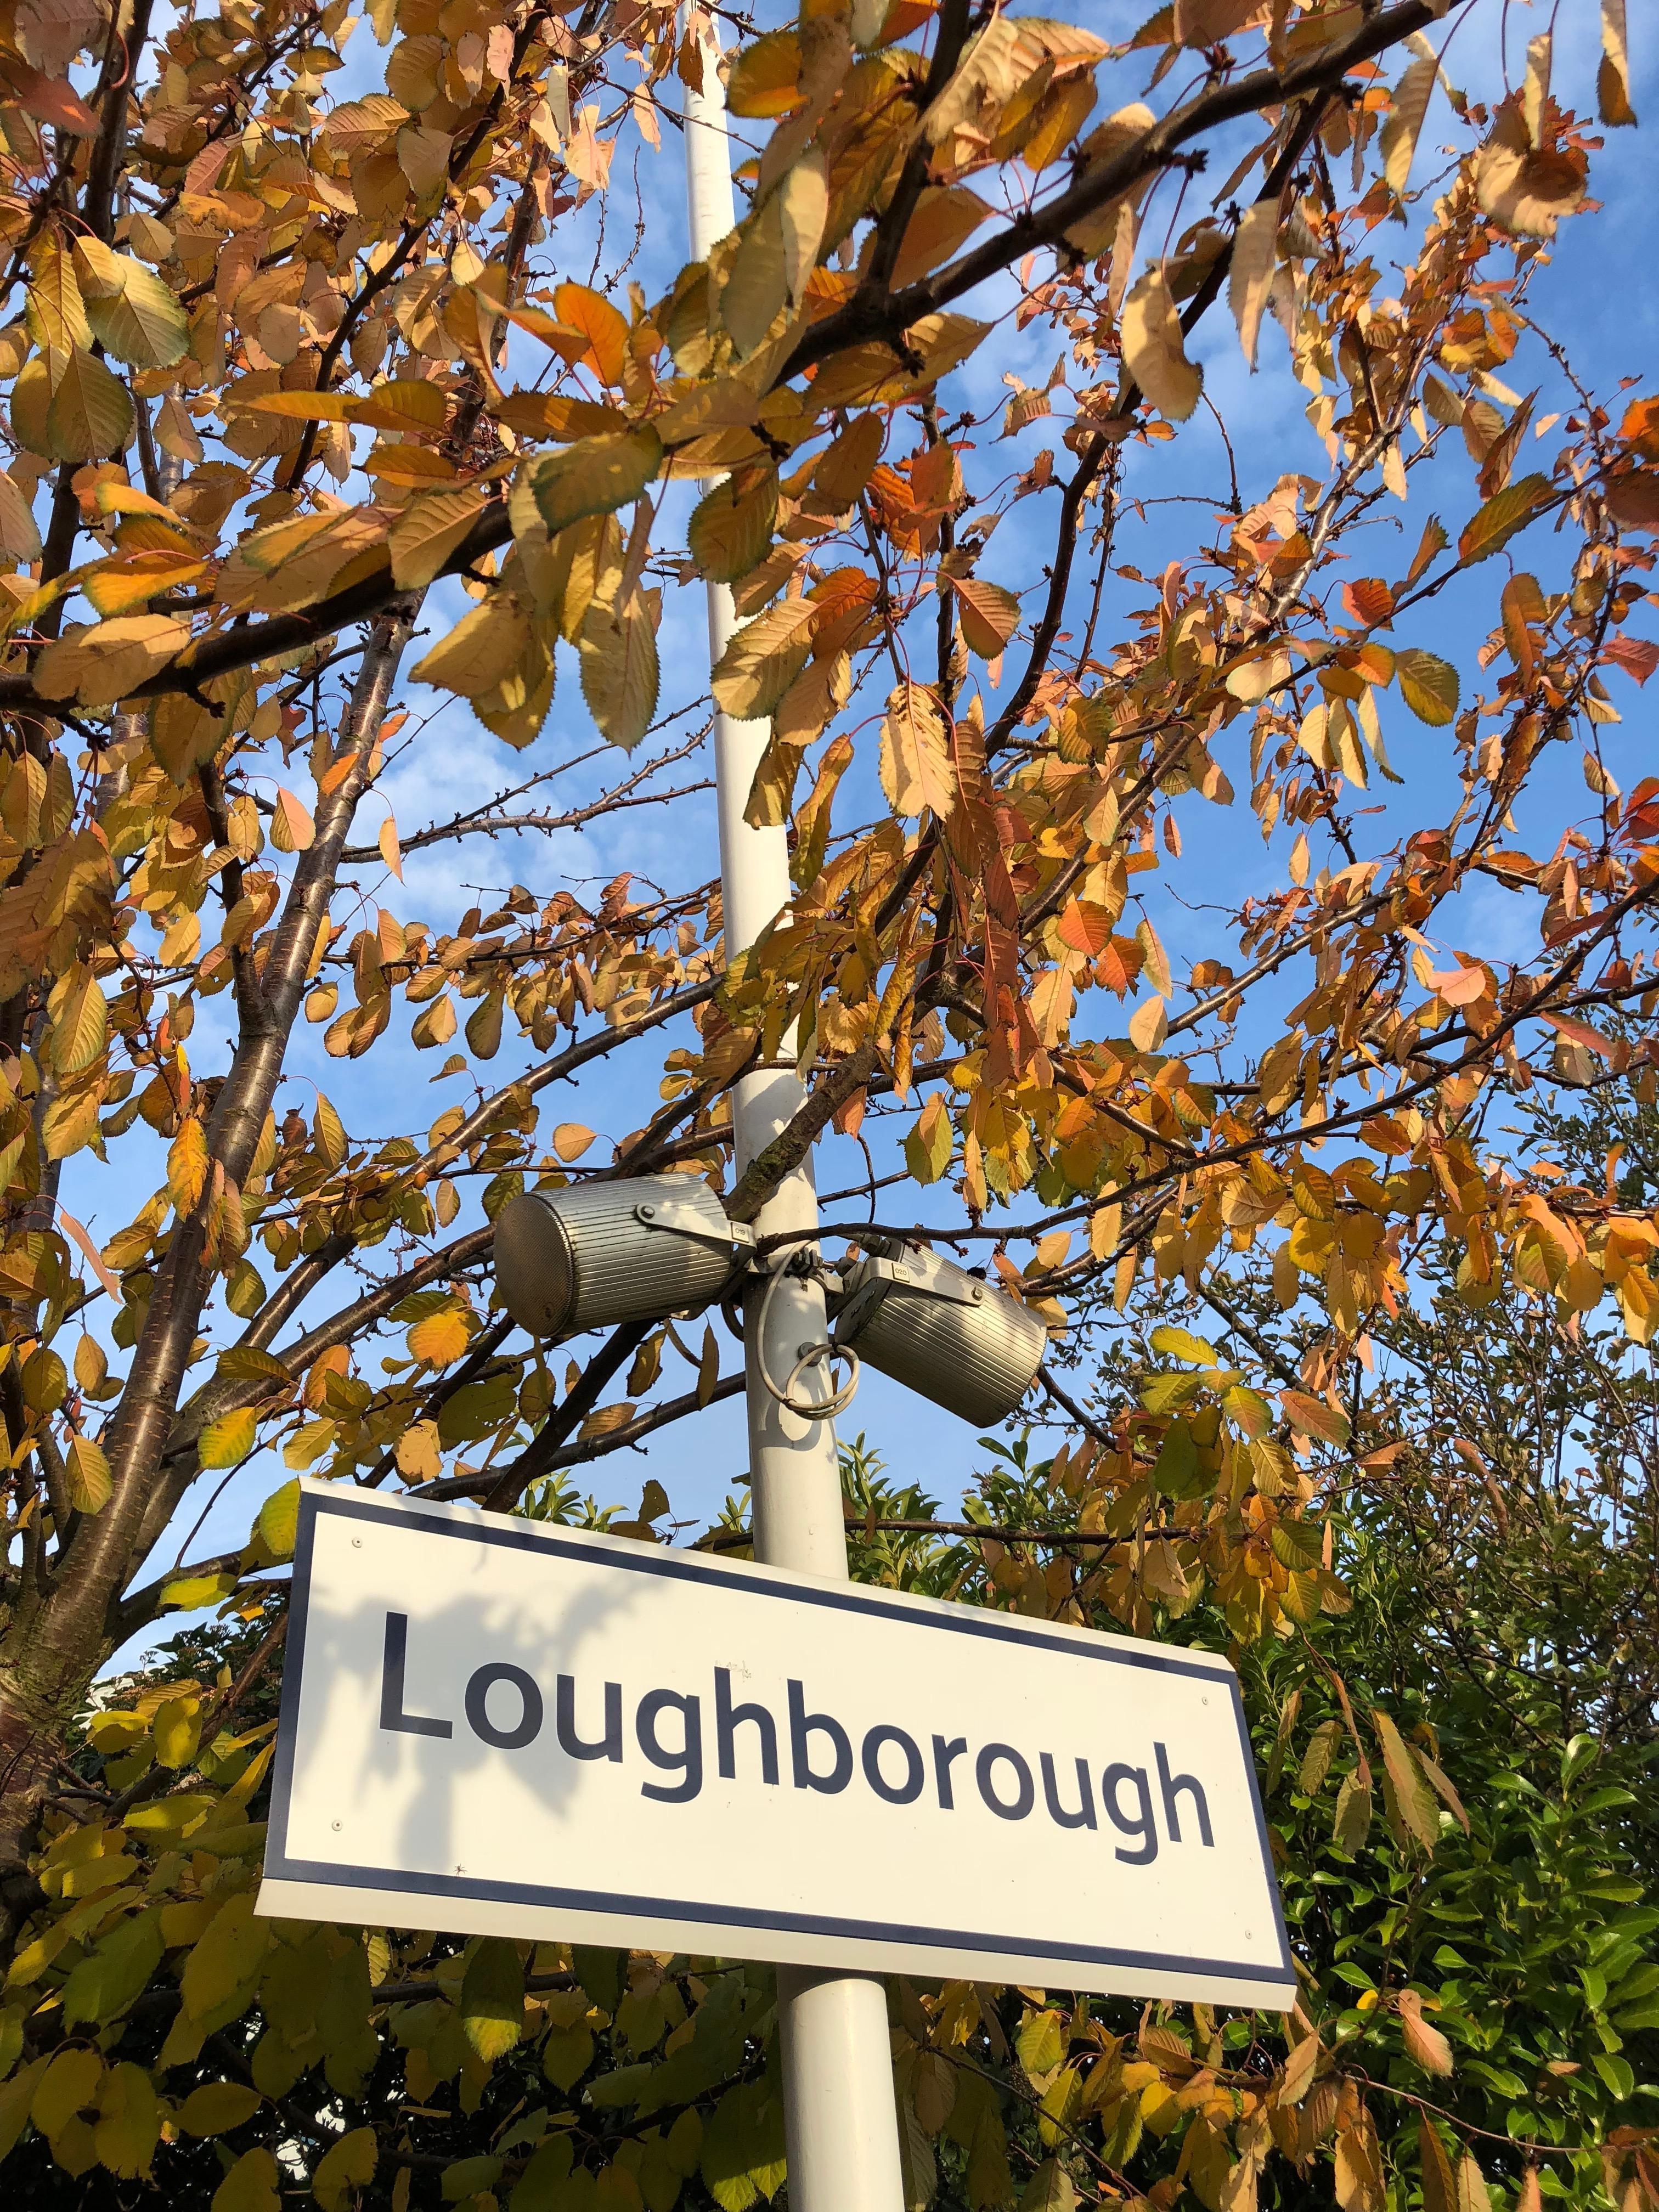 Convene meetings at loughborough